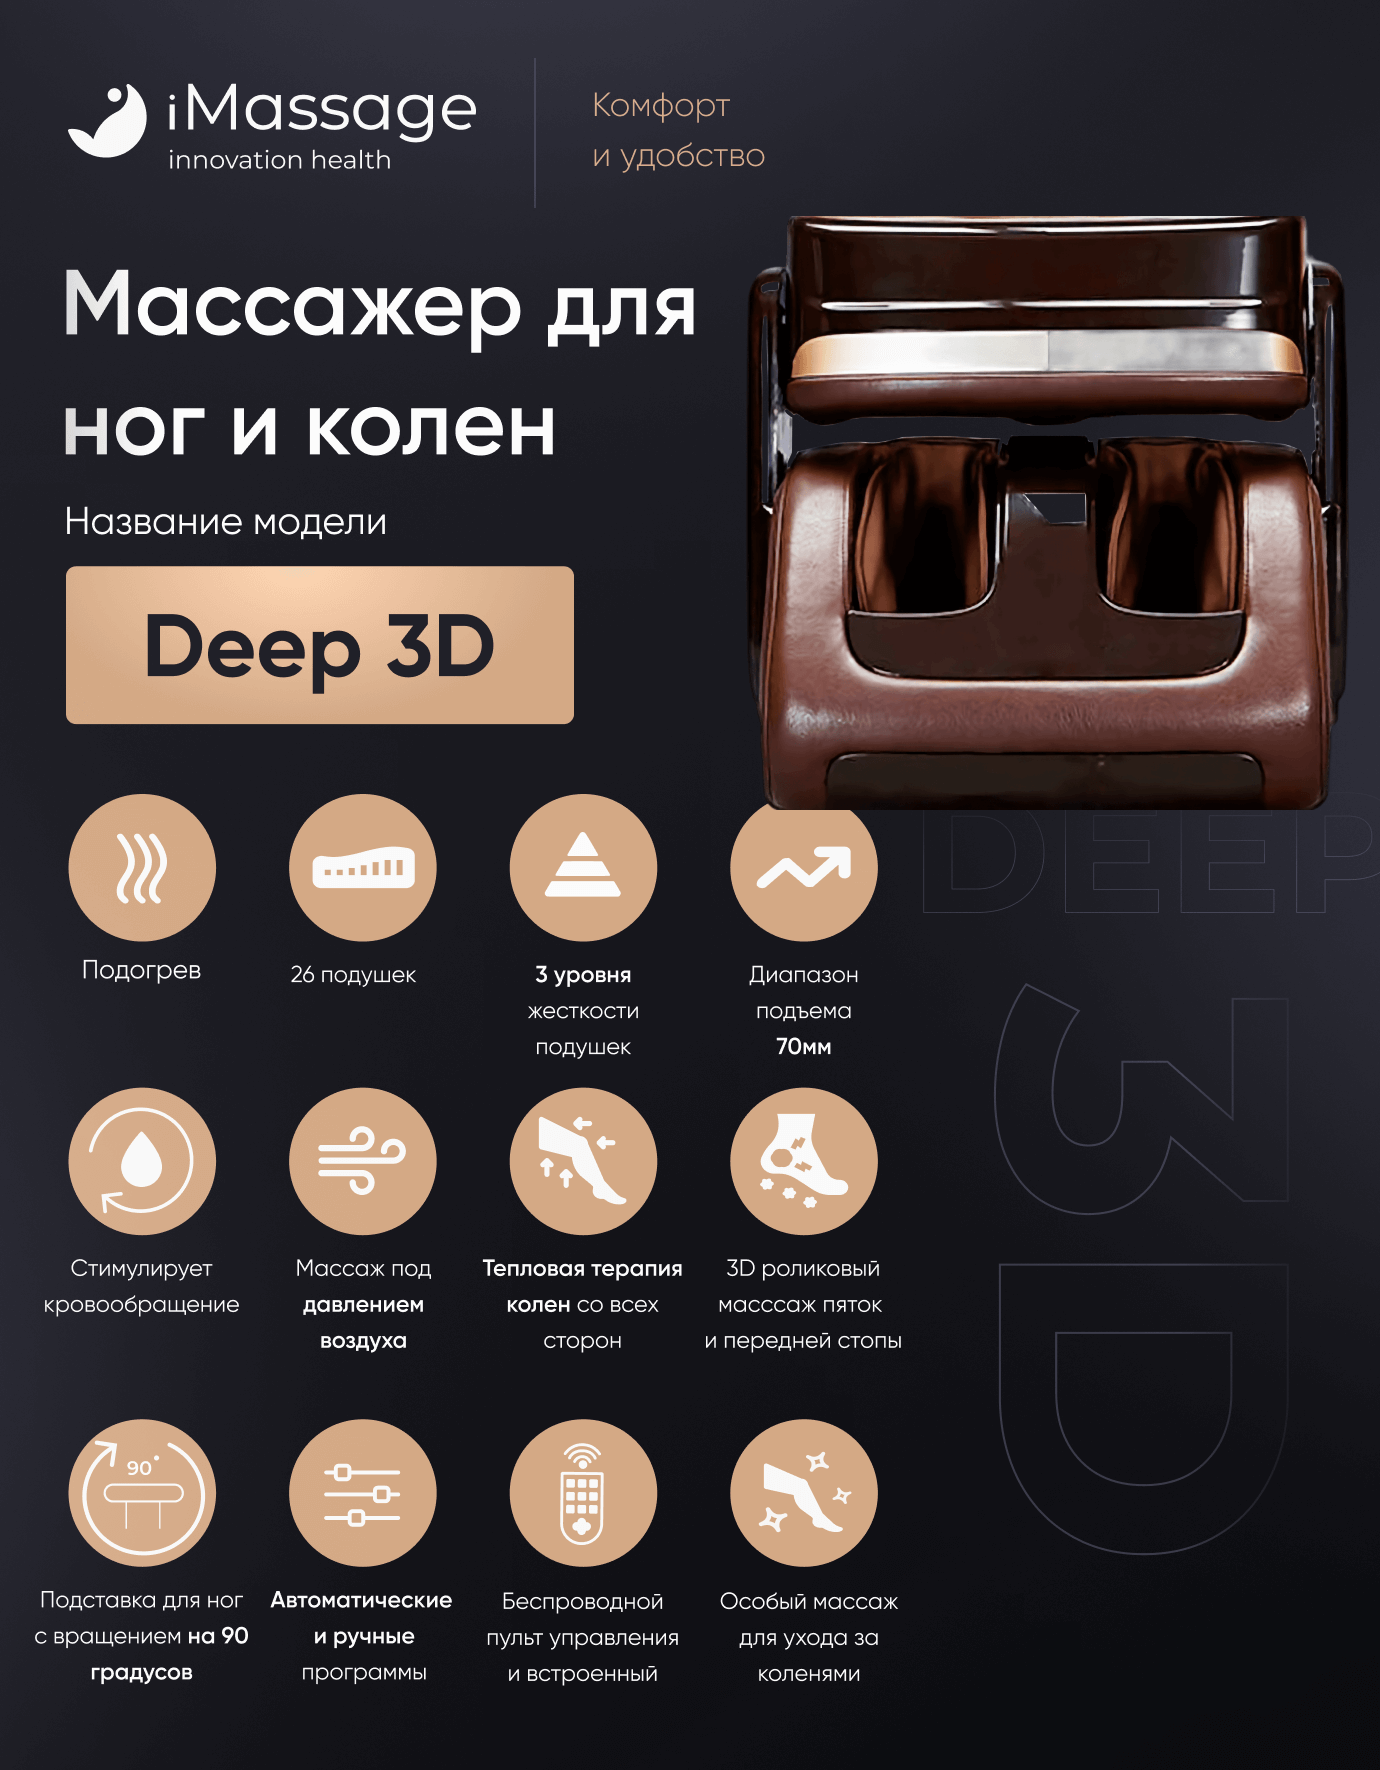 Функционал iMassage Deep 3D